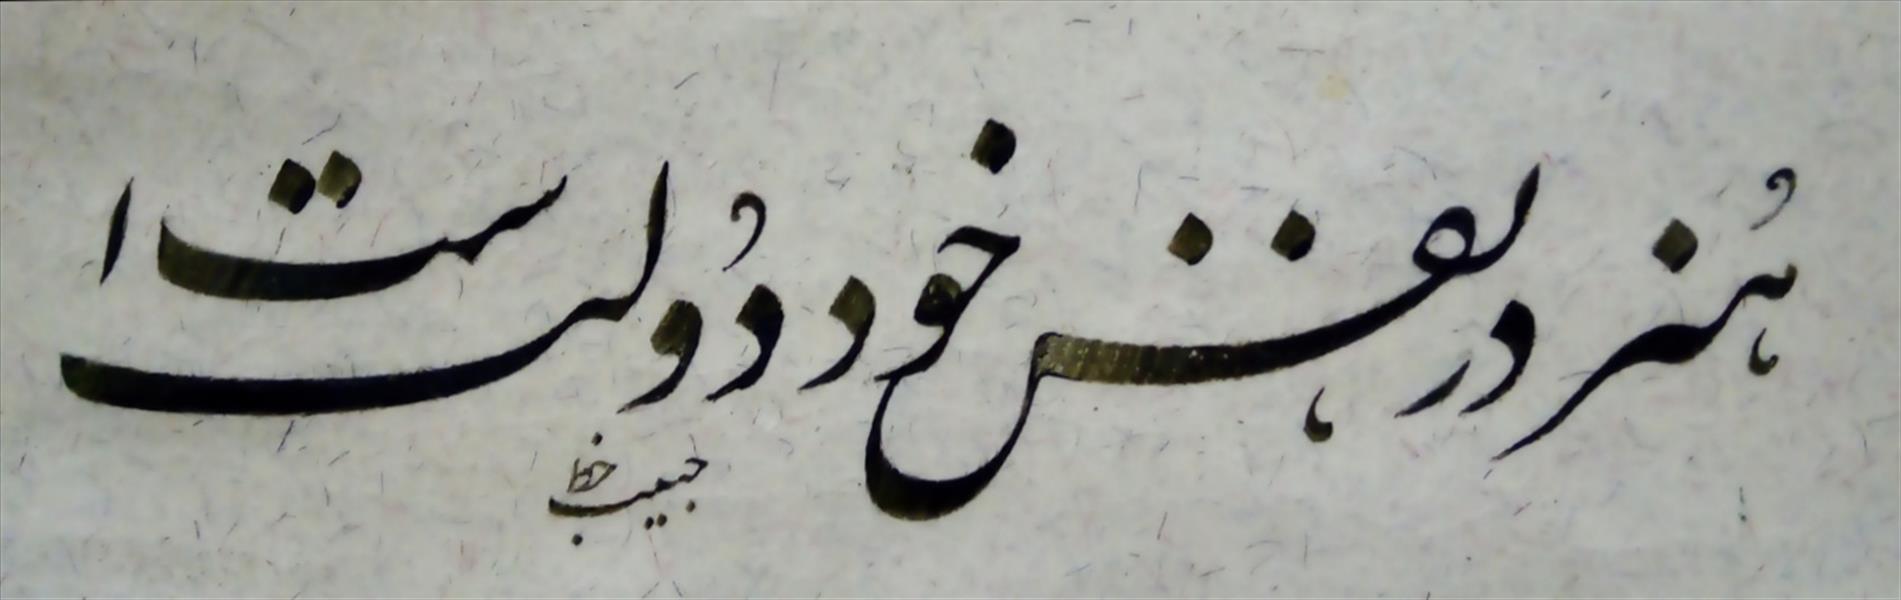 هنر خوشنویسی محفل خوشنویسی (Hghgallery (Habib Qanbari هنر در نفس خود دولت است
خوشنویسی حبیب قنبری
1399
مرکب ترکیبی سبز و قلم 7 میلیمتر و کاغذ اهار مهره